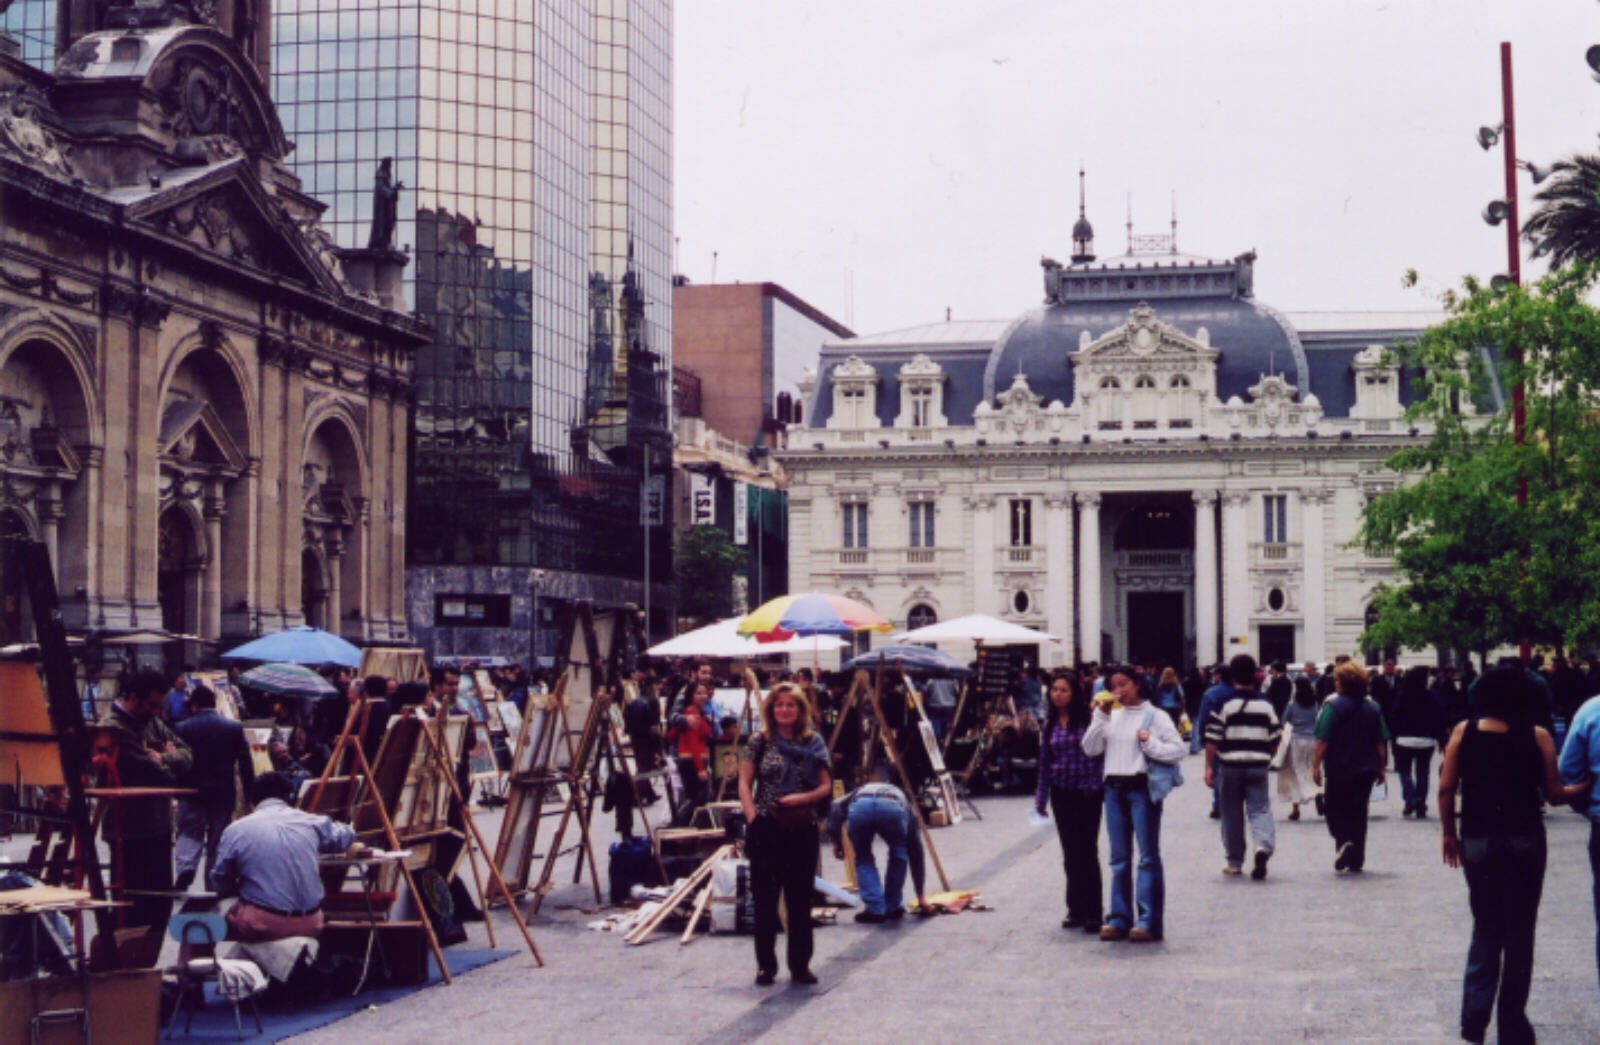 Artists in Plaza de Armas, Santiago de Chile